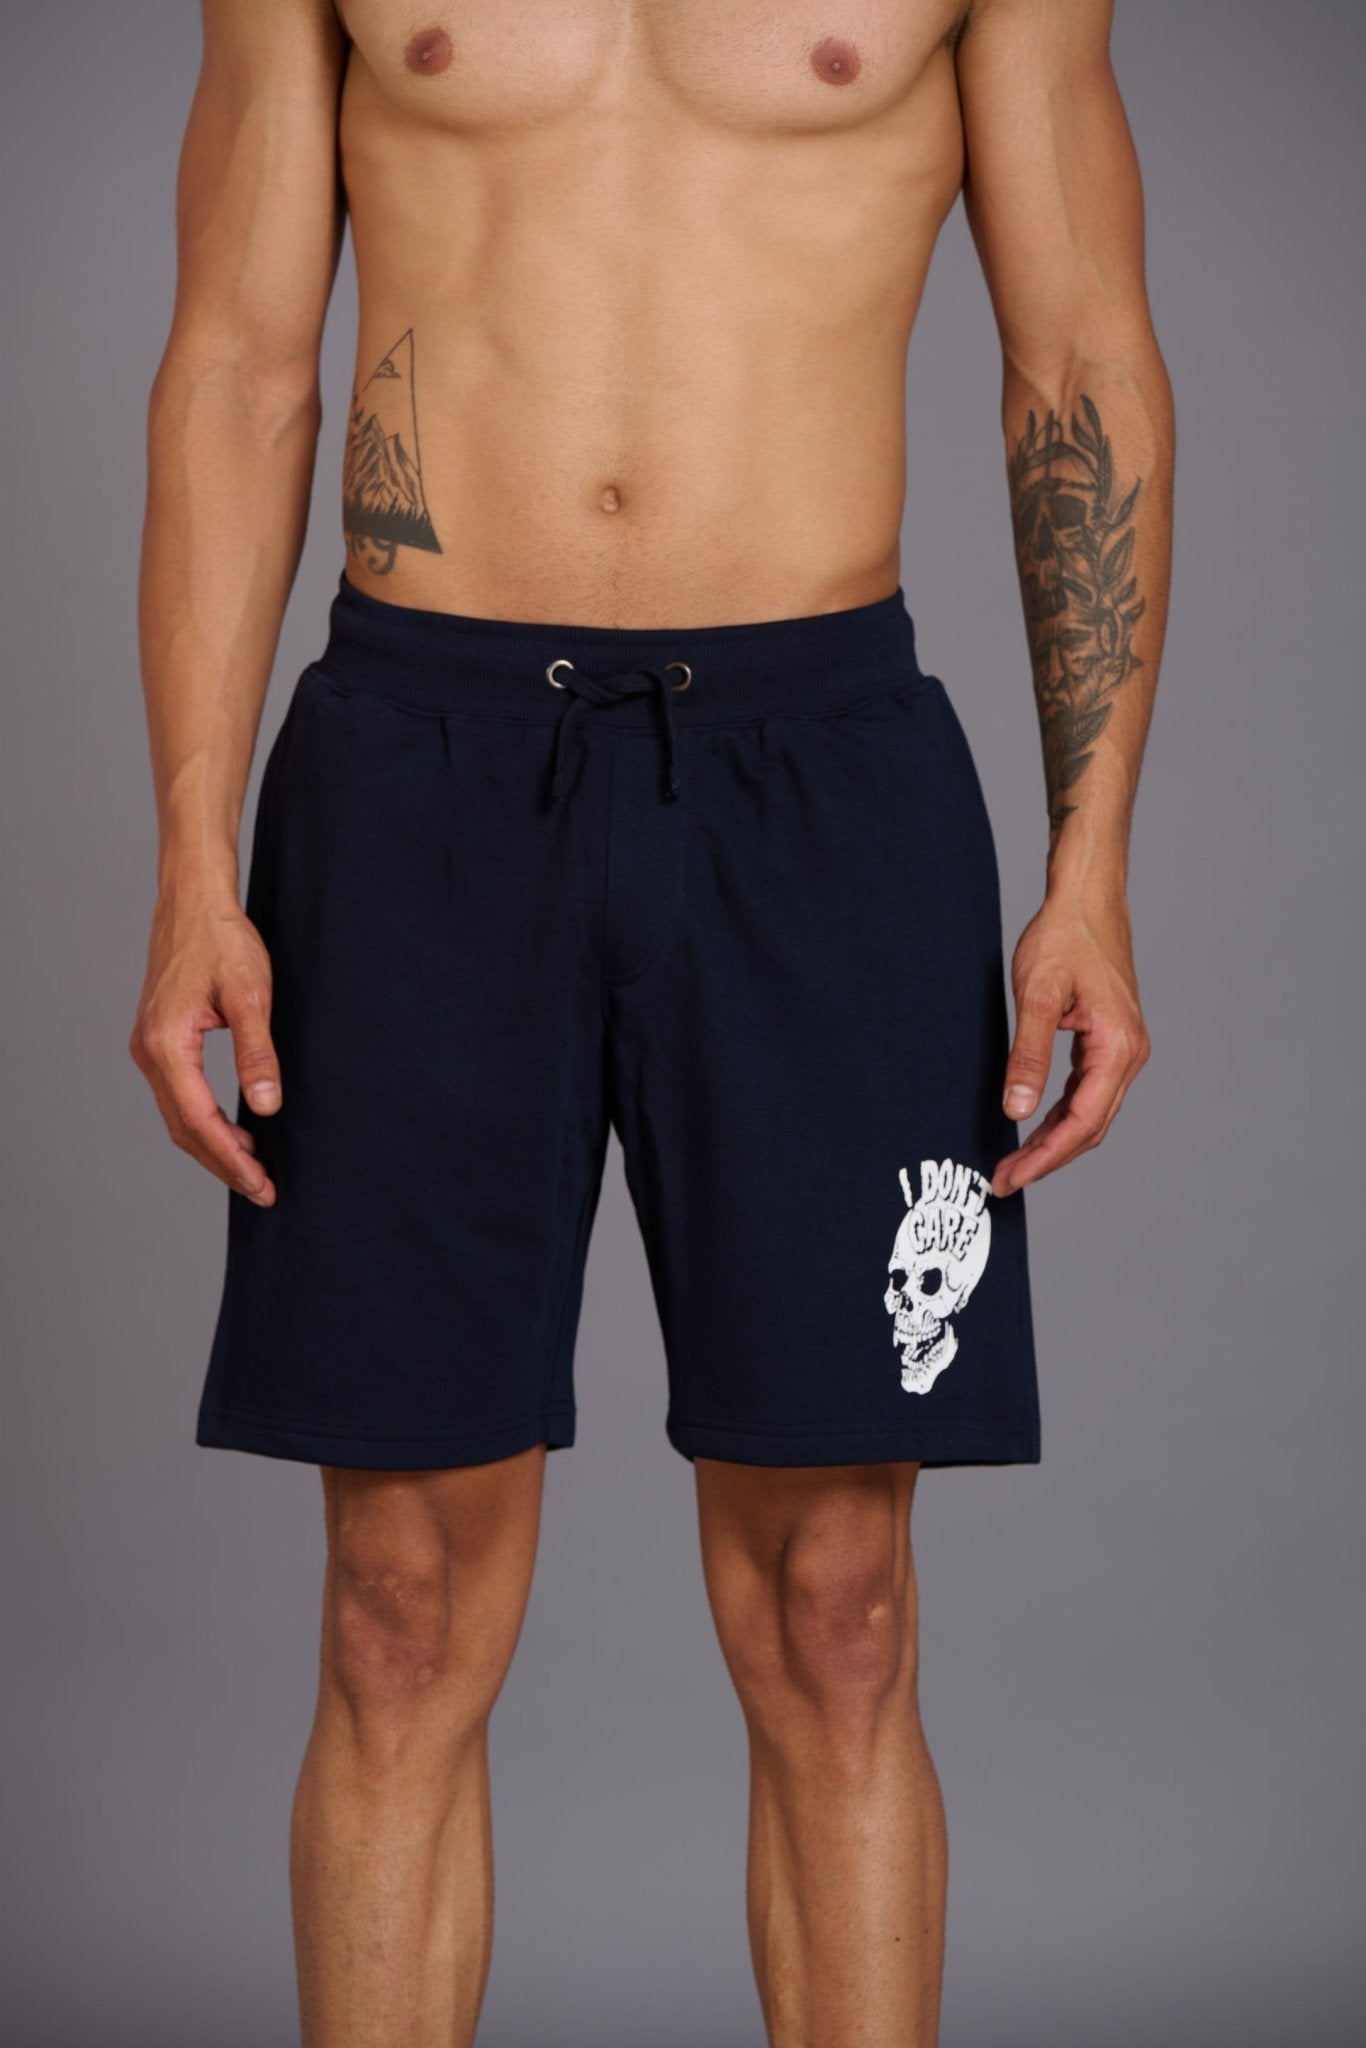 Skull & I Don’t Care Printed Navy Shorts for Men - Go Devil